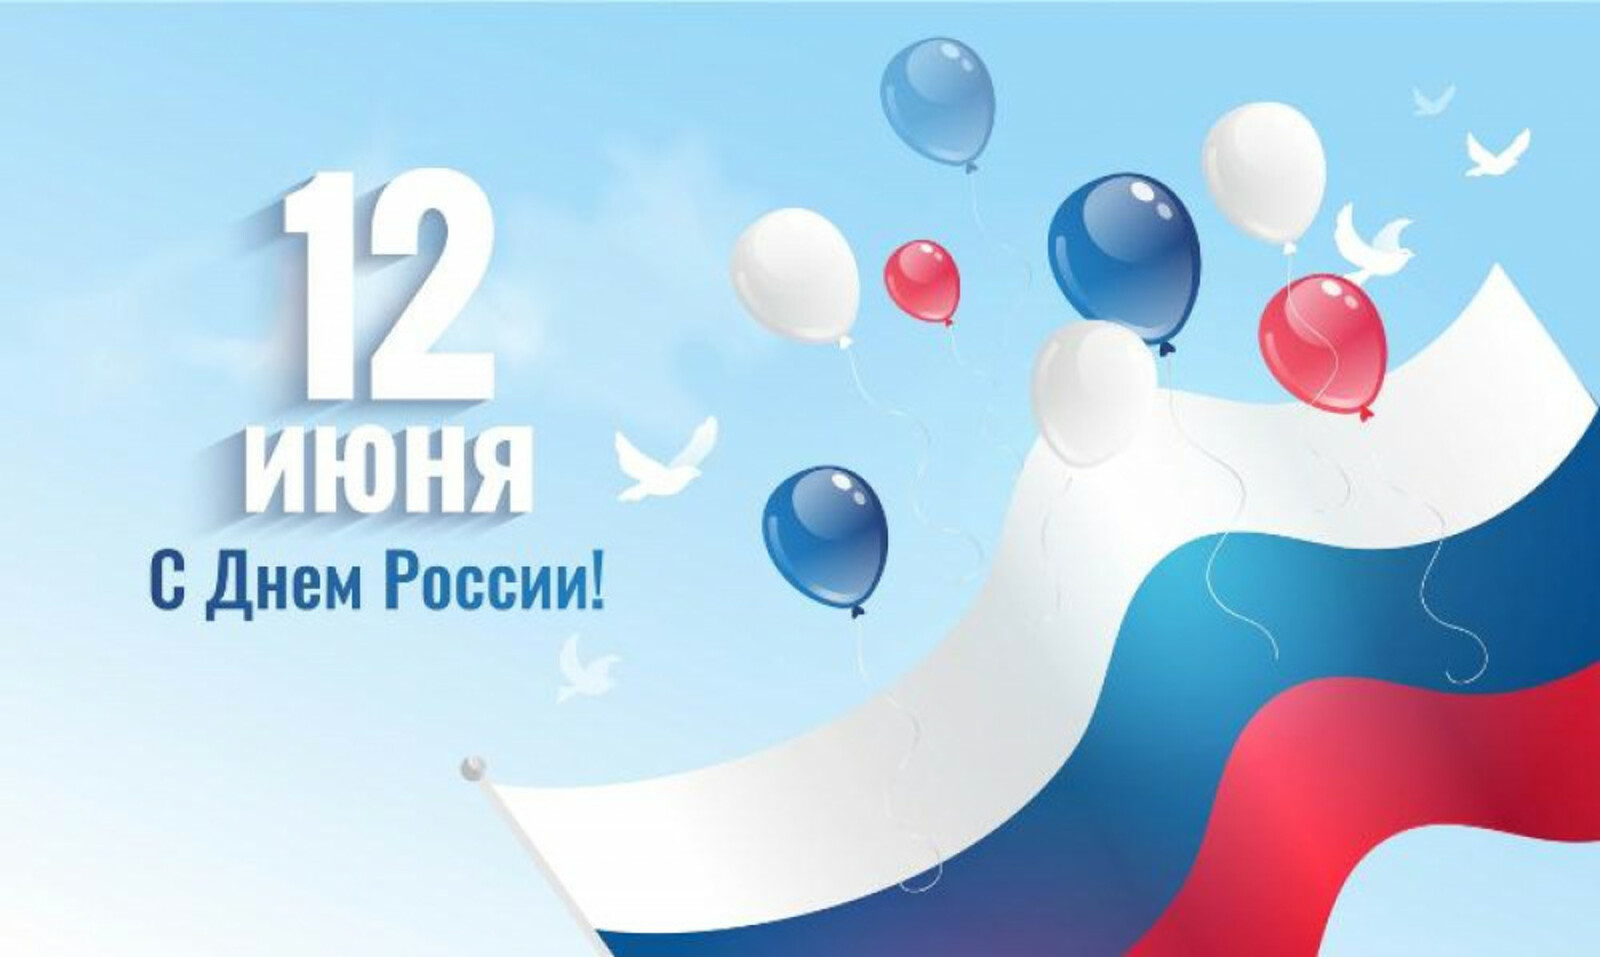 Для жителей Башкортостана ко Дню России - программа праздничных мероприятий, подготовленных учреждениями культуры и искусства